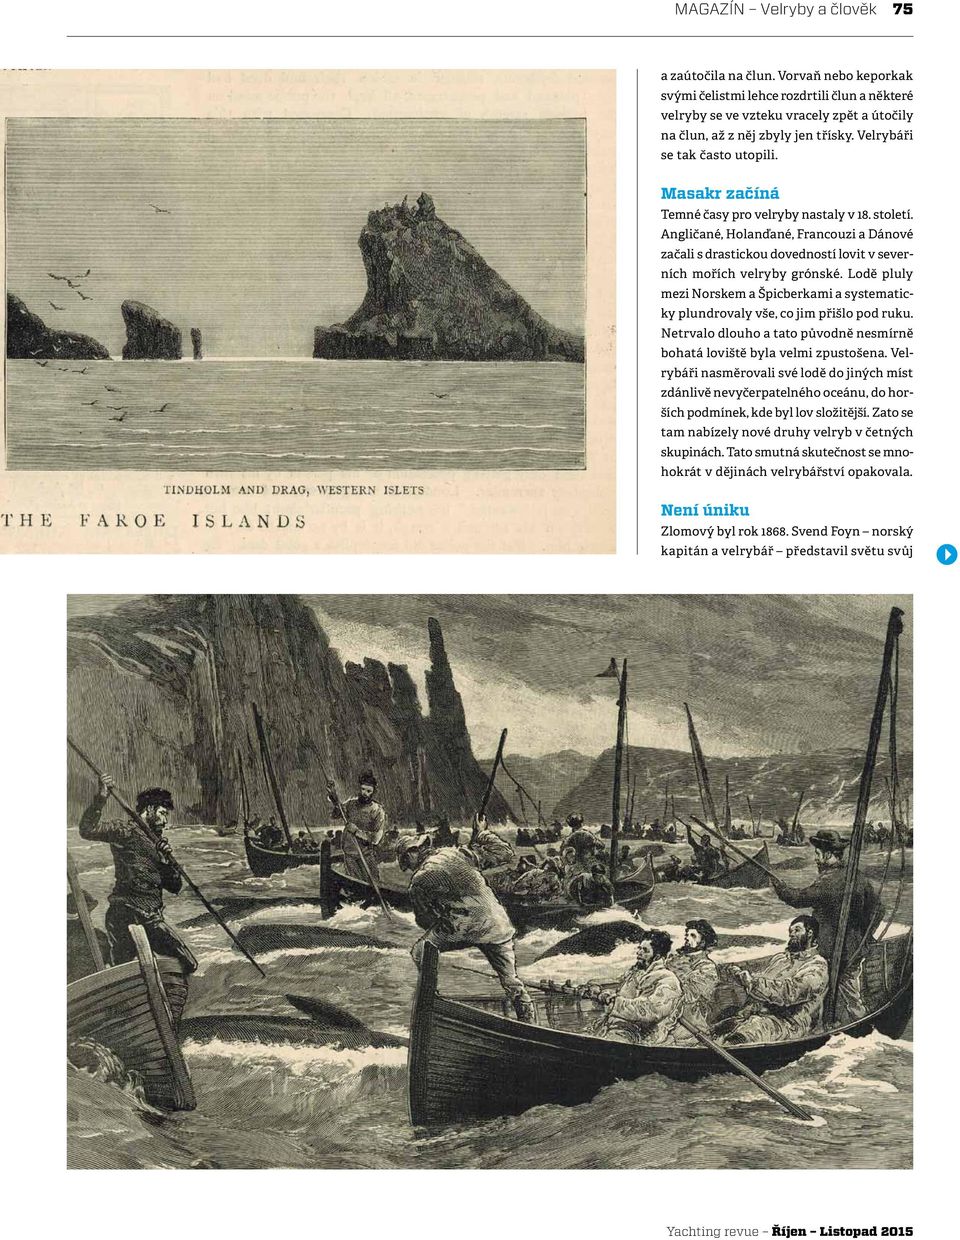 Angličané, Holanďané, Francouzi a Dánové začali s drastickou dovedností lovit v severních mořích velryby grónské.